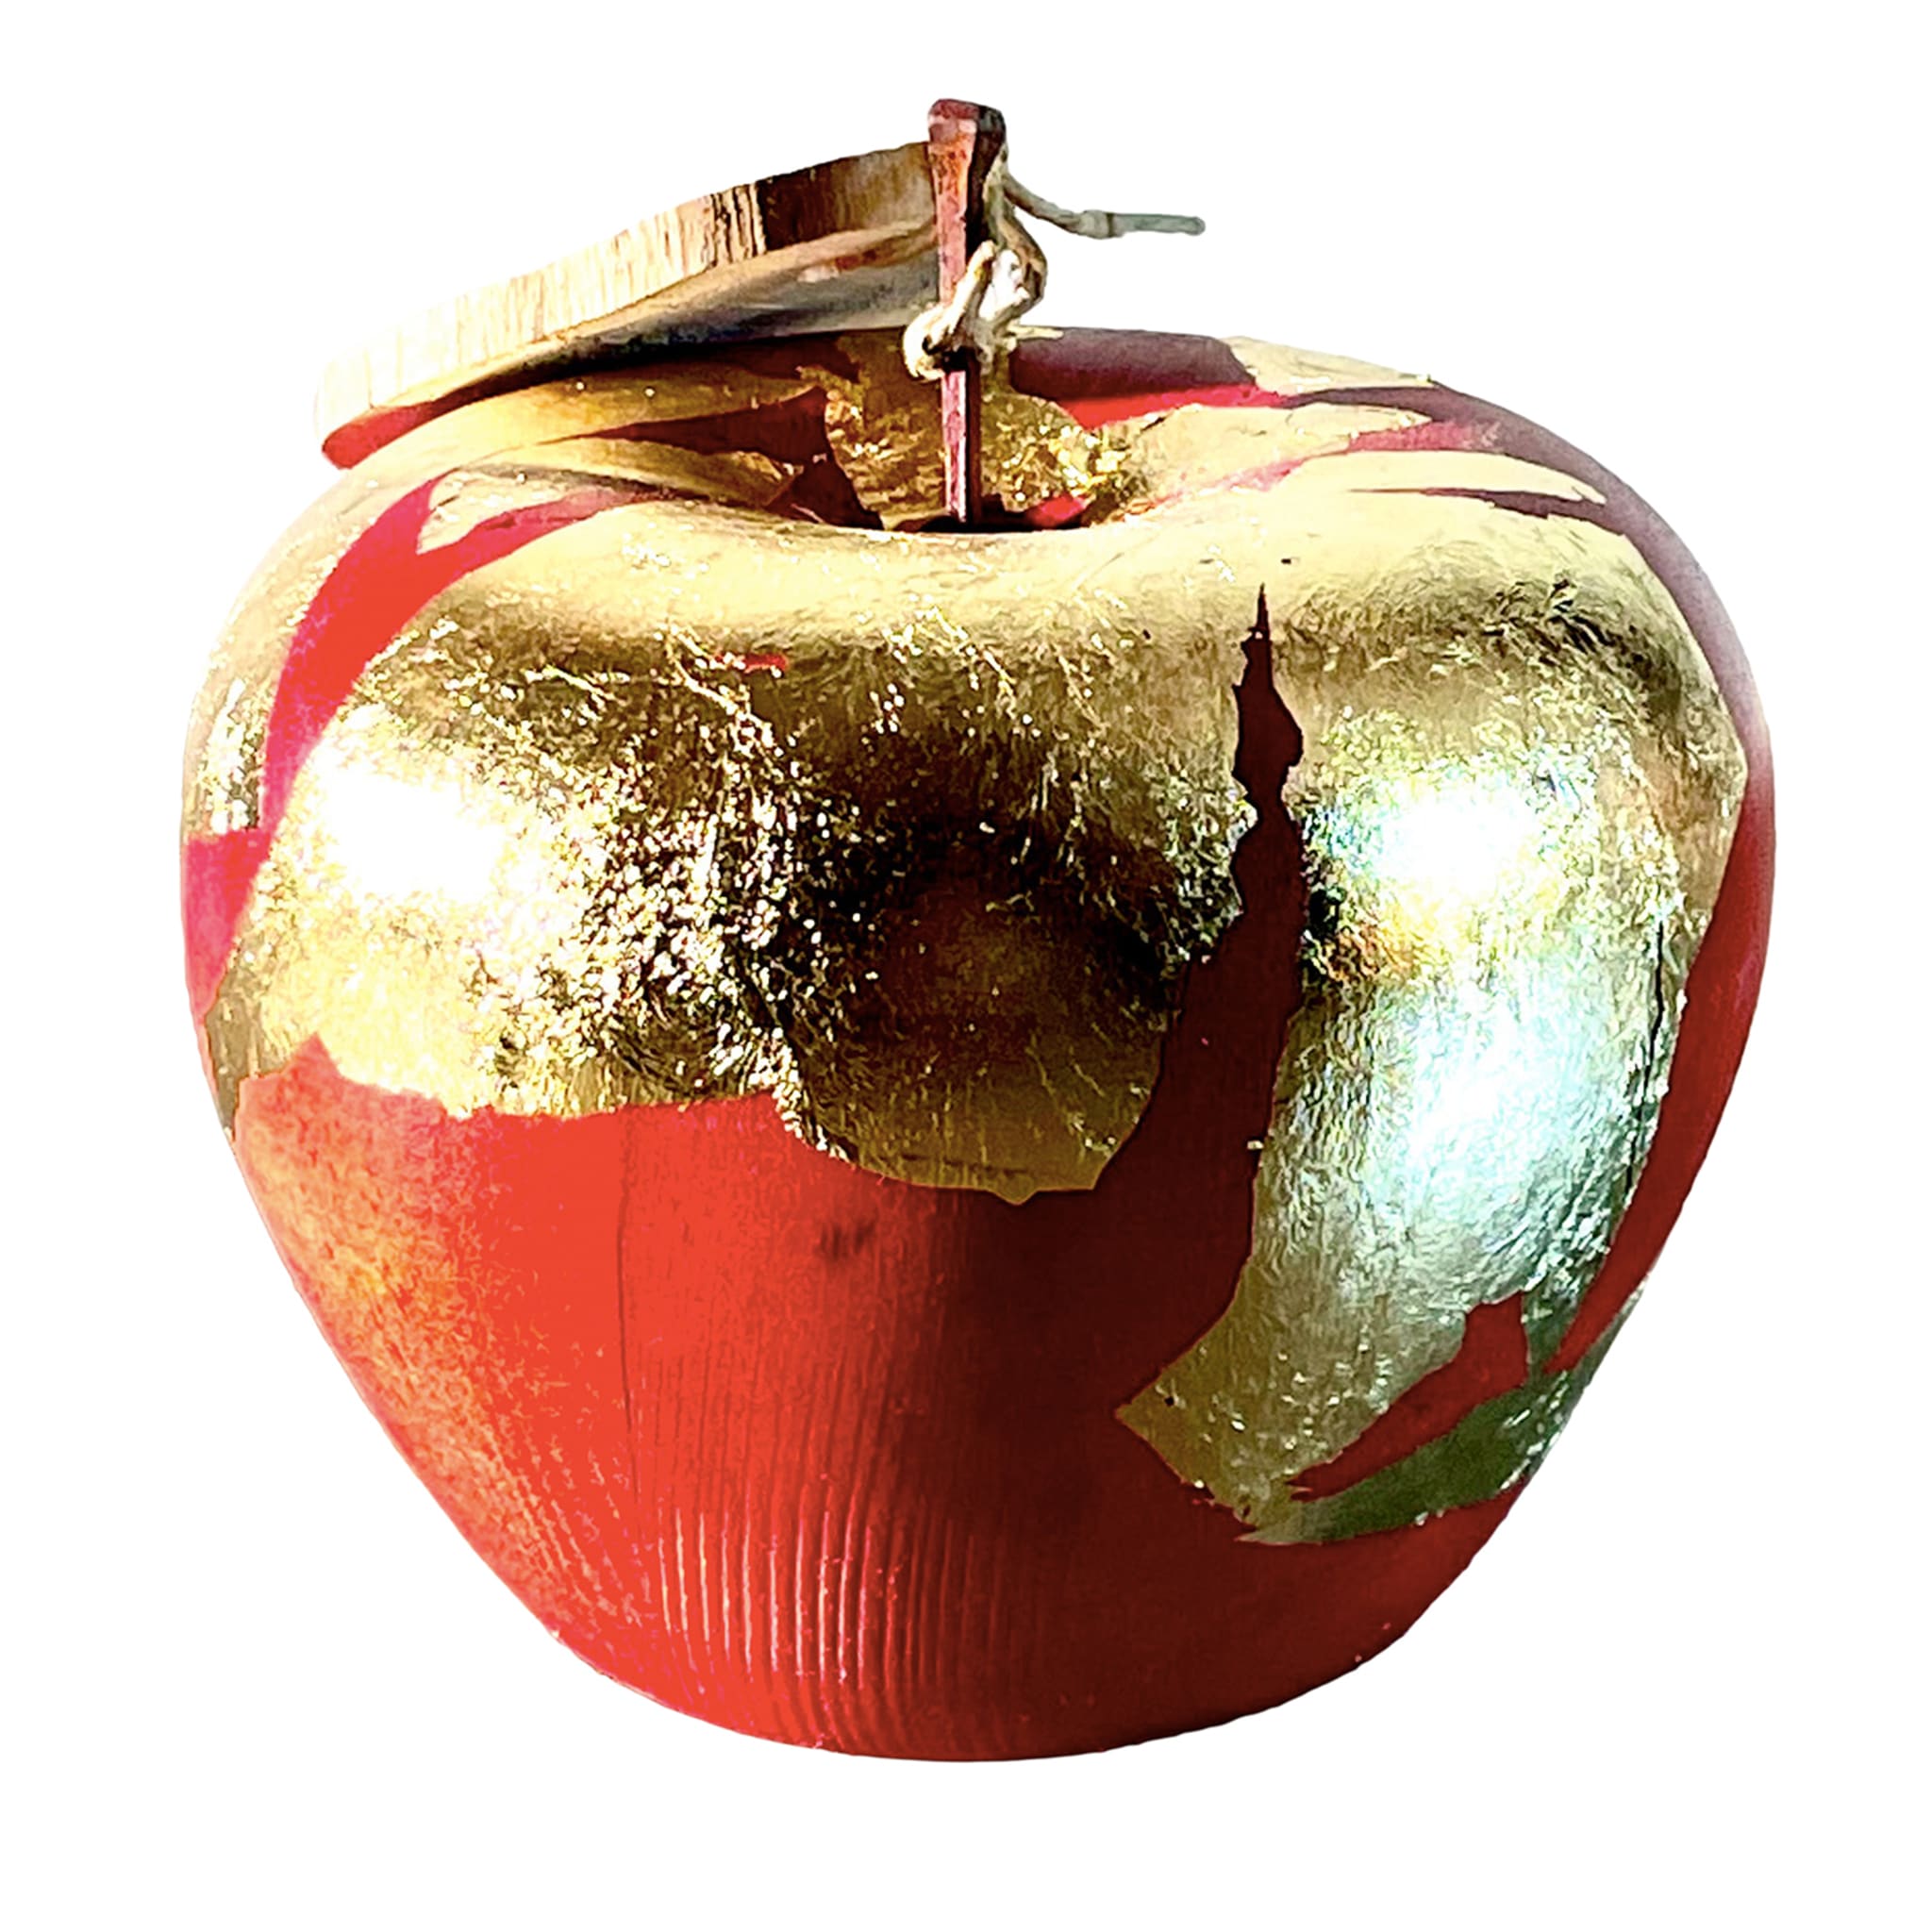 Scultura di mela rossa con foglie d'oro - Vista principale